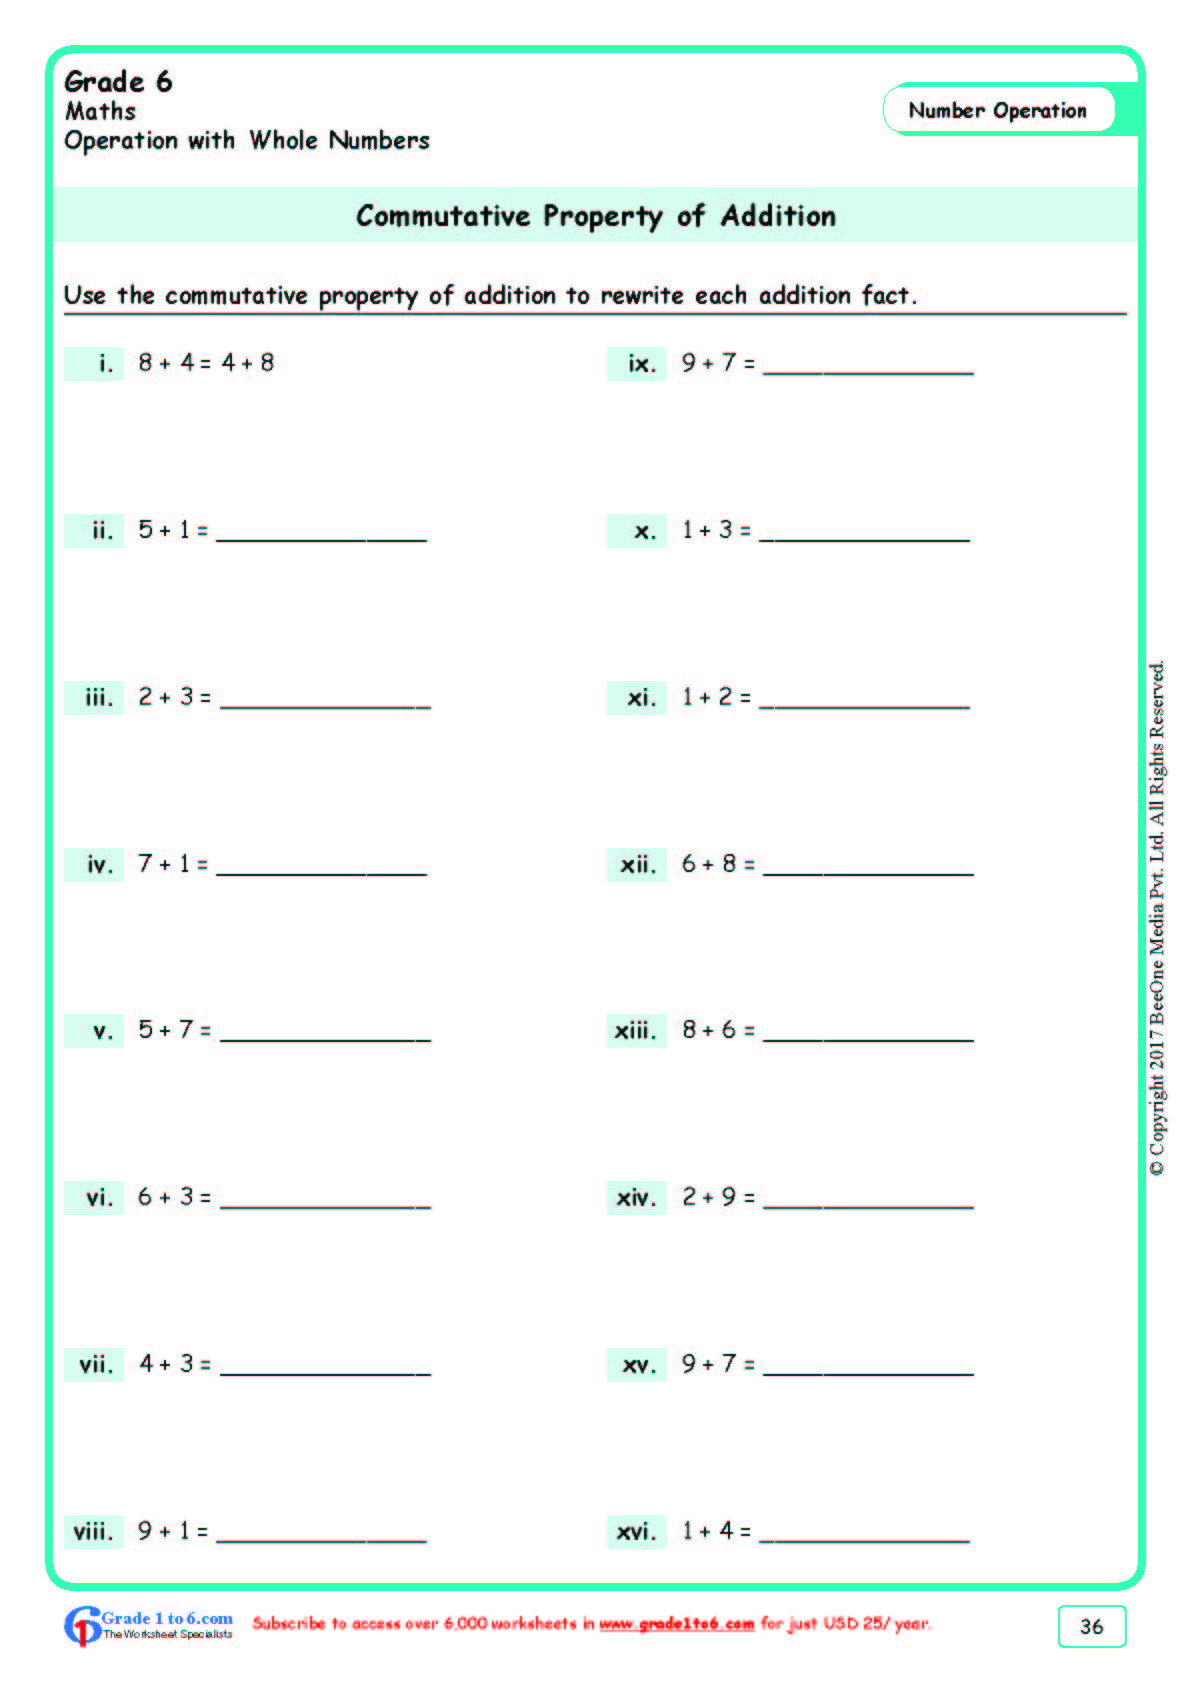 Super Teacher Worksheets Distributive Property Of Multiplication